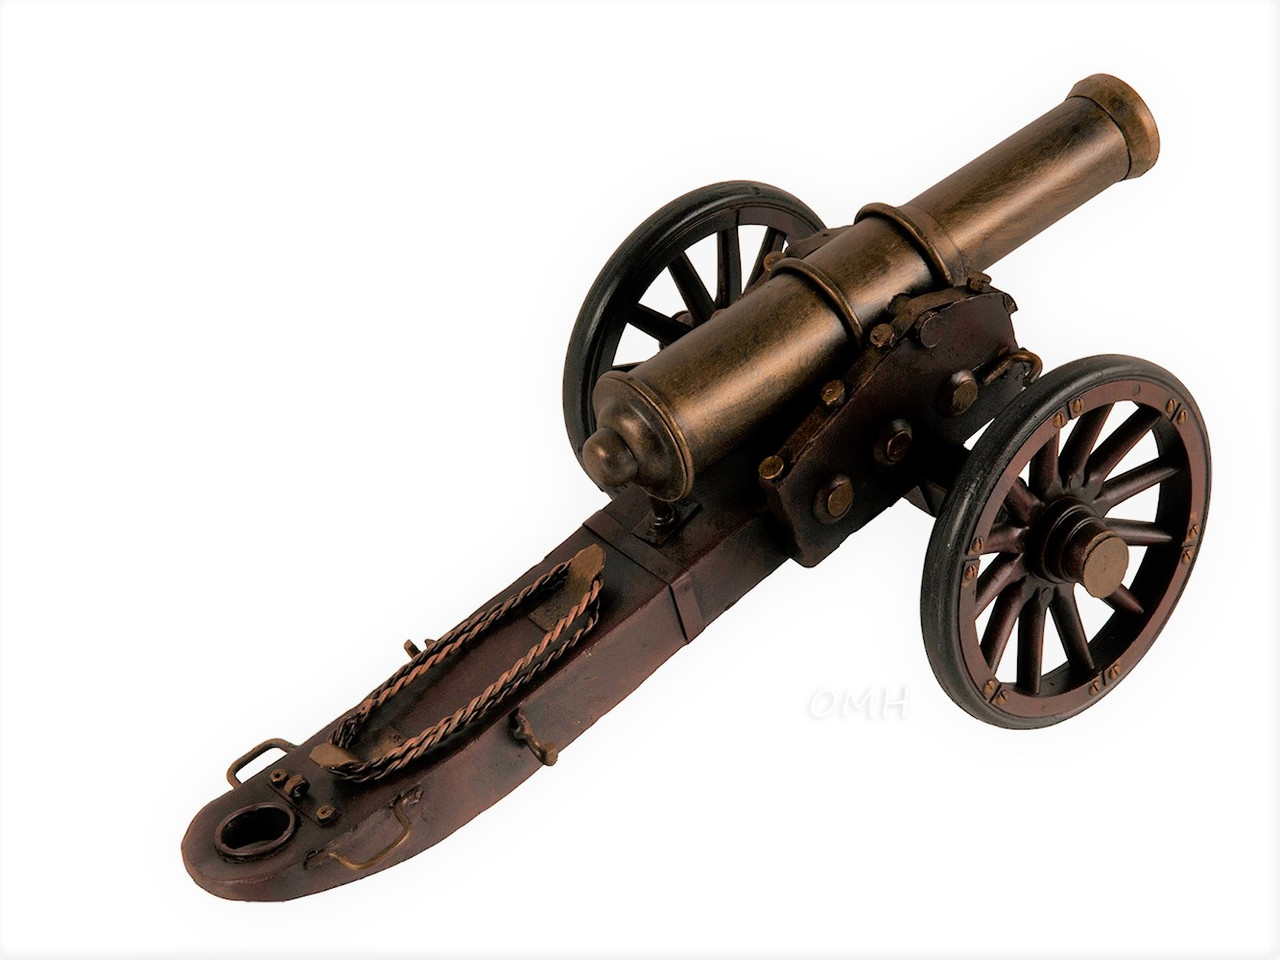 Civil War Artillery Cannon Metal Model American Civil War Military